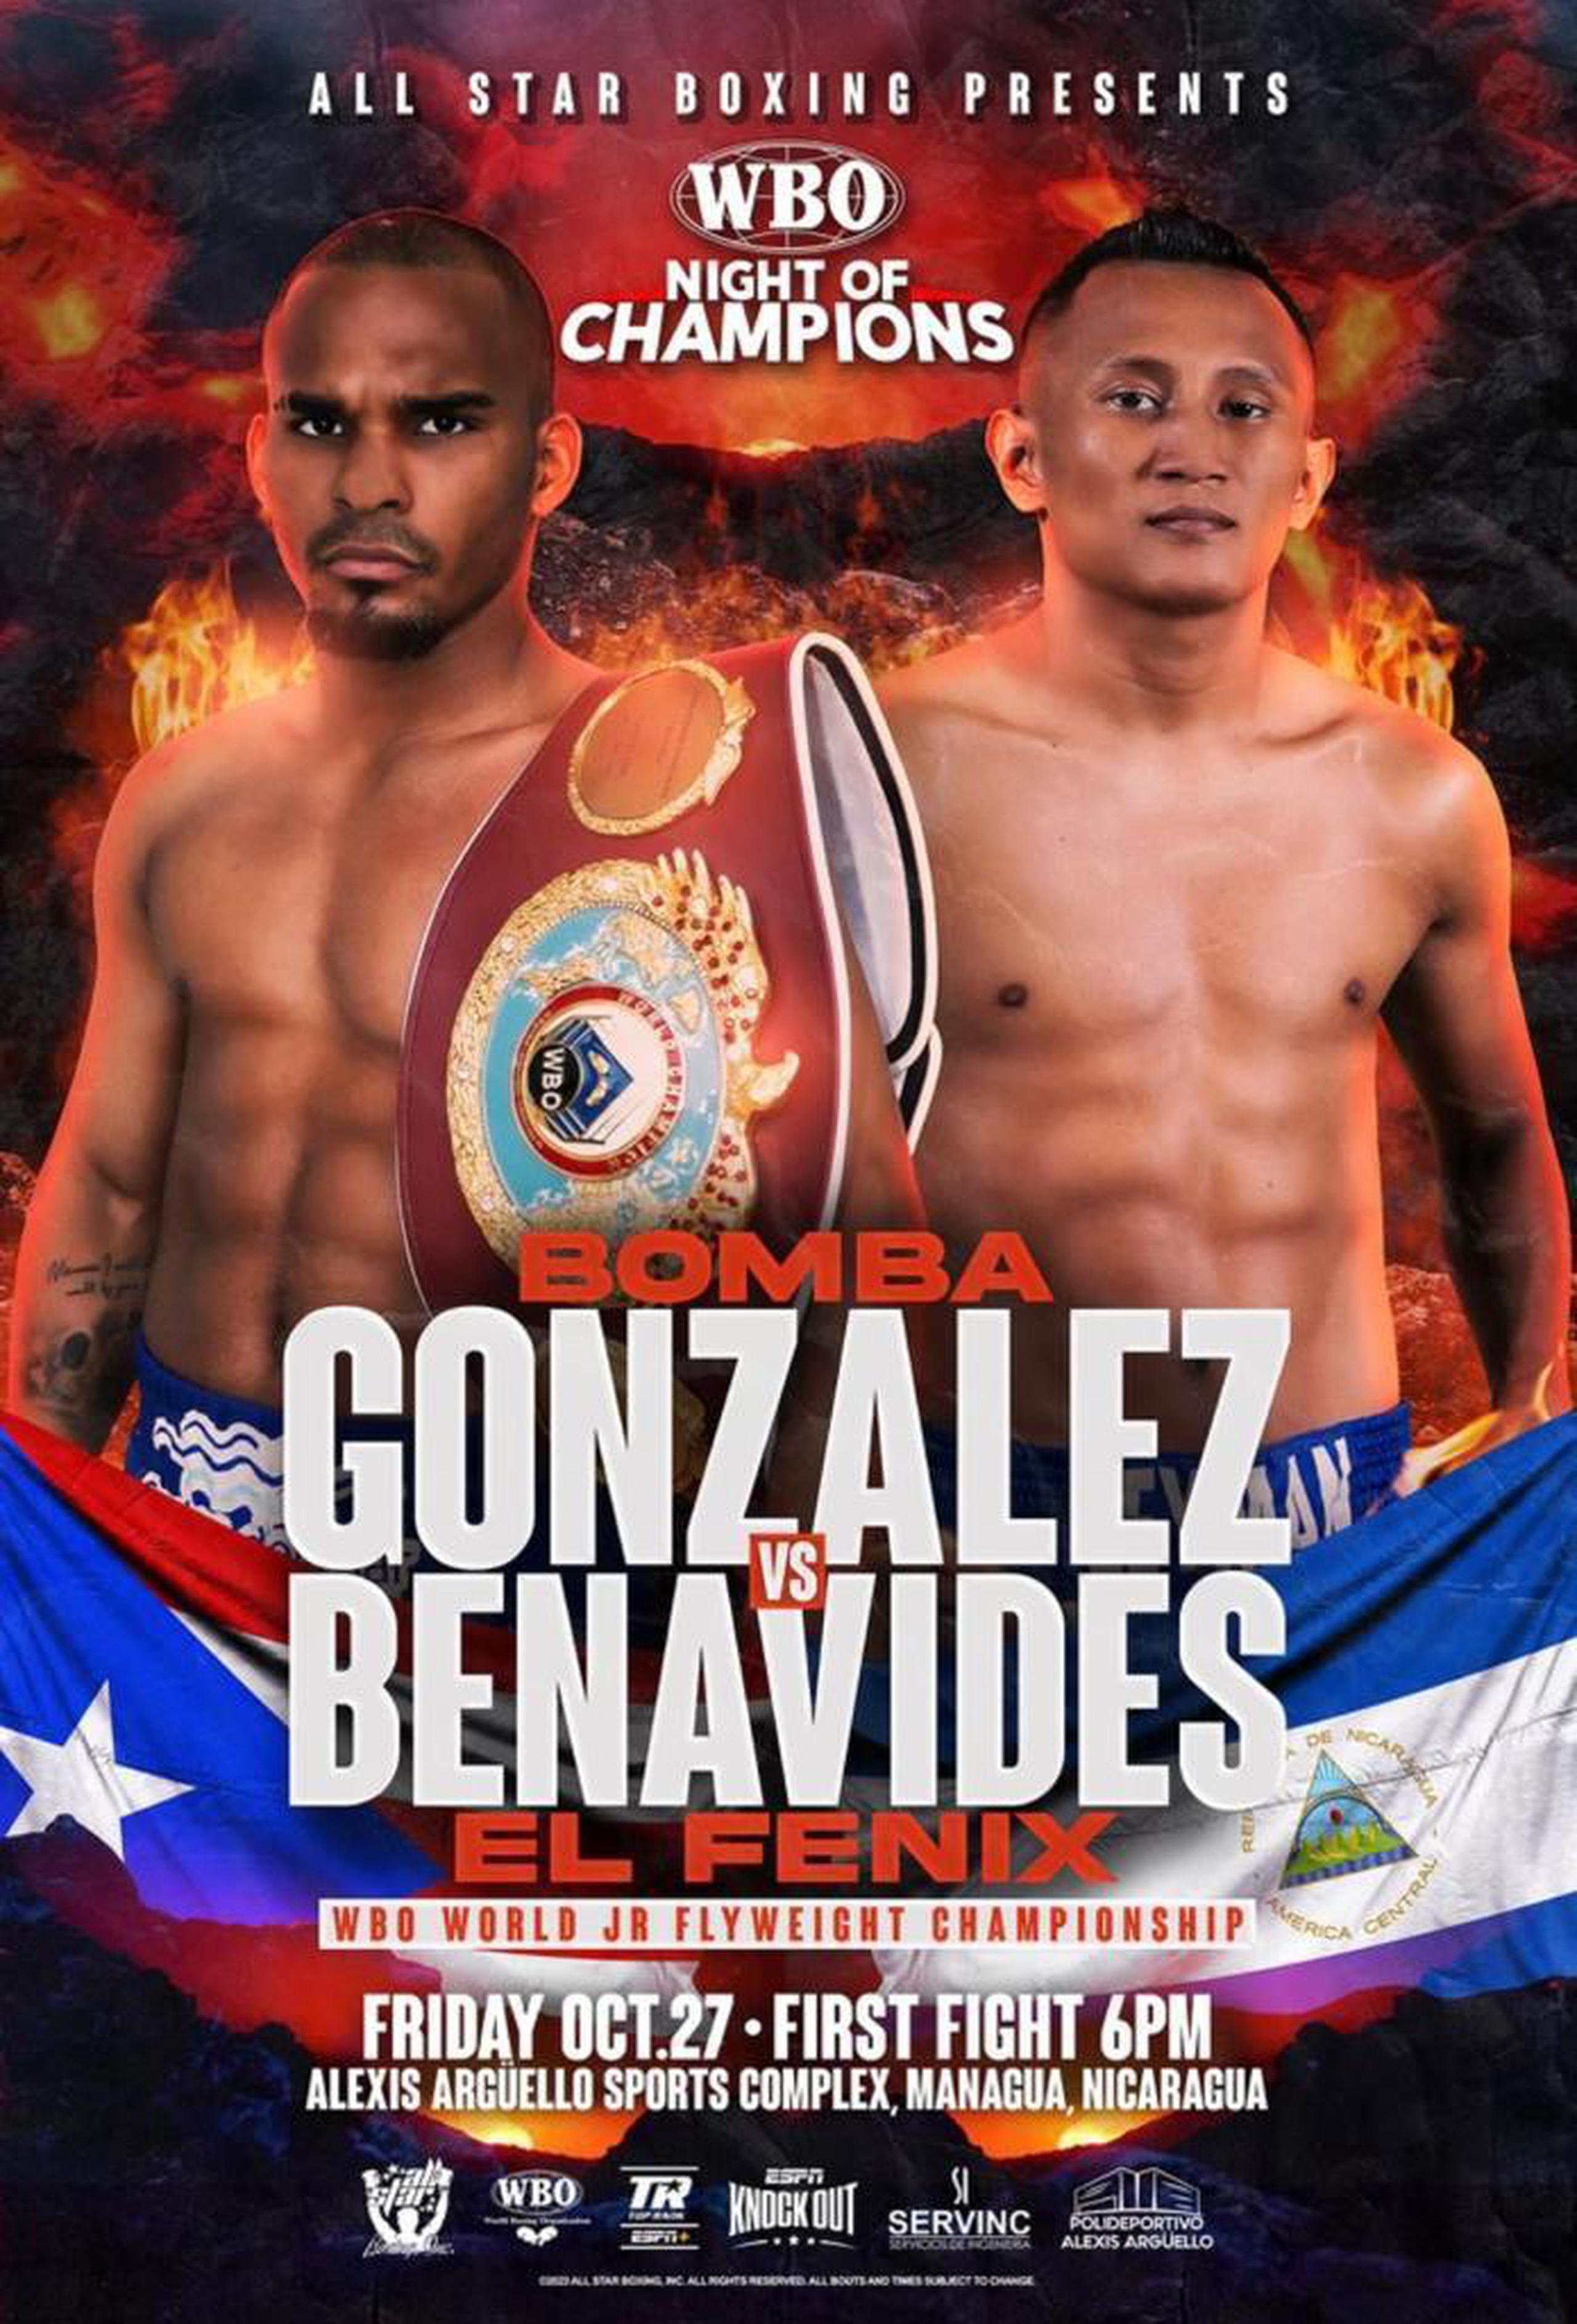 All Star Boxing hizo el anuncio de la pelea en Managua, Nicaragua.